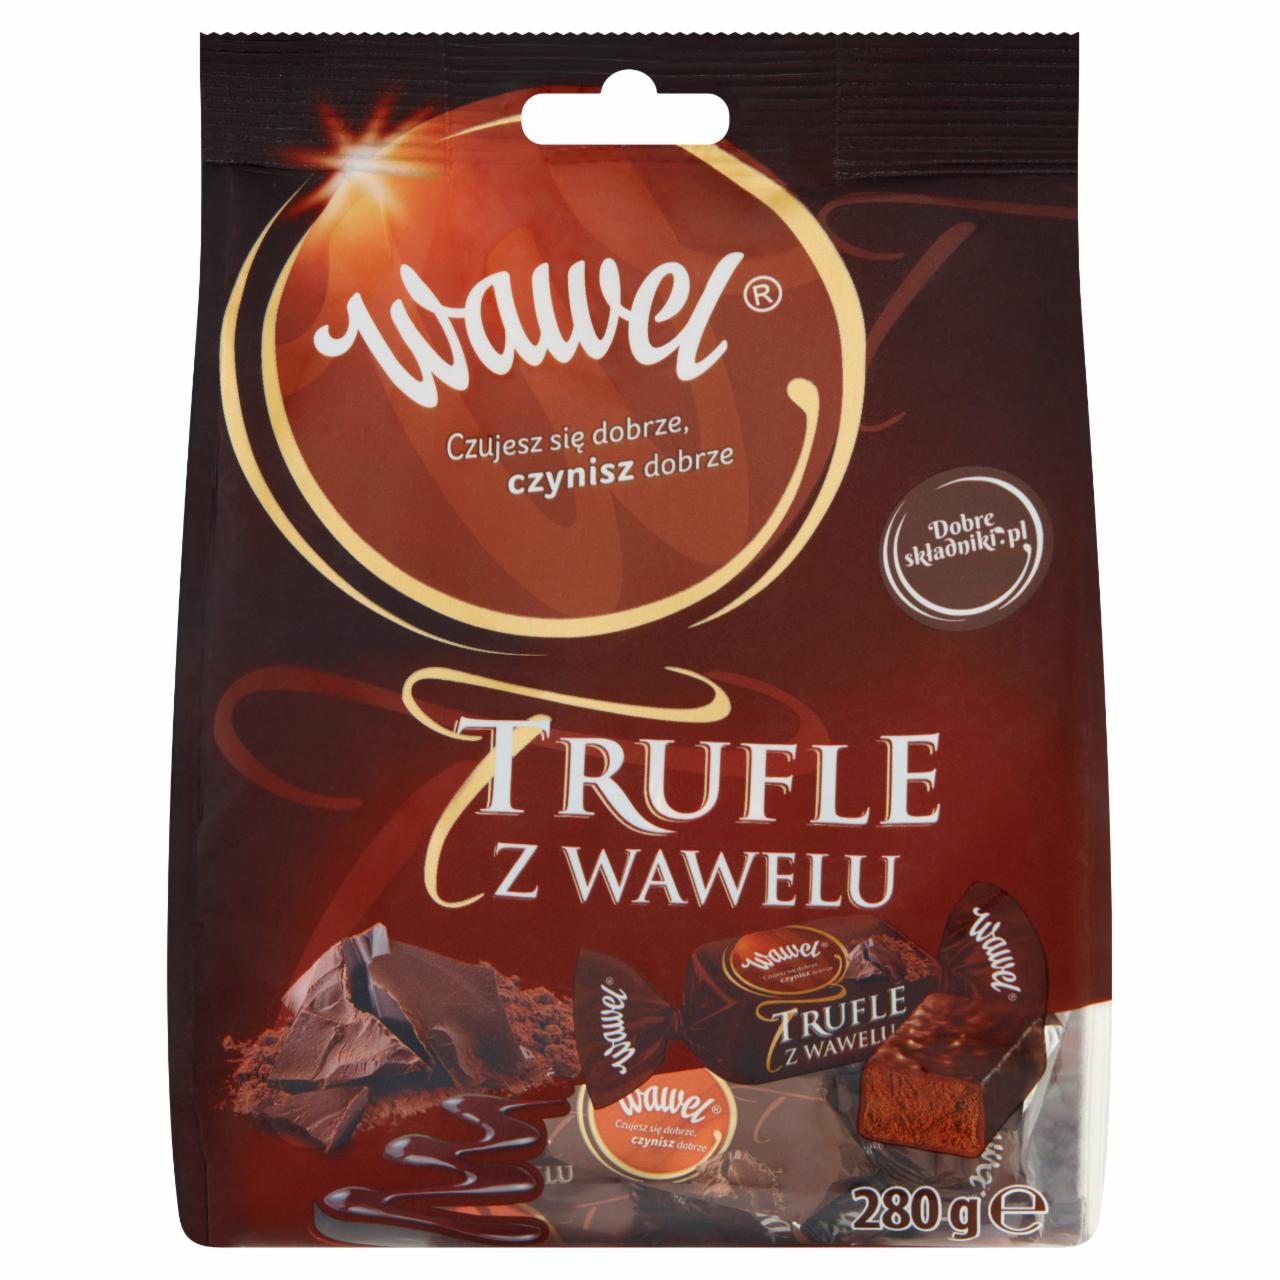 Zdjęcia - Wawel Trufle z Wawelu Cukierki o smaku rumowym w czekoladzie 280 g